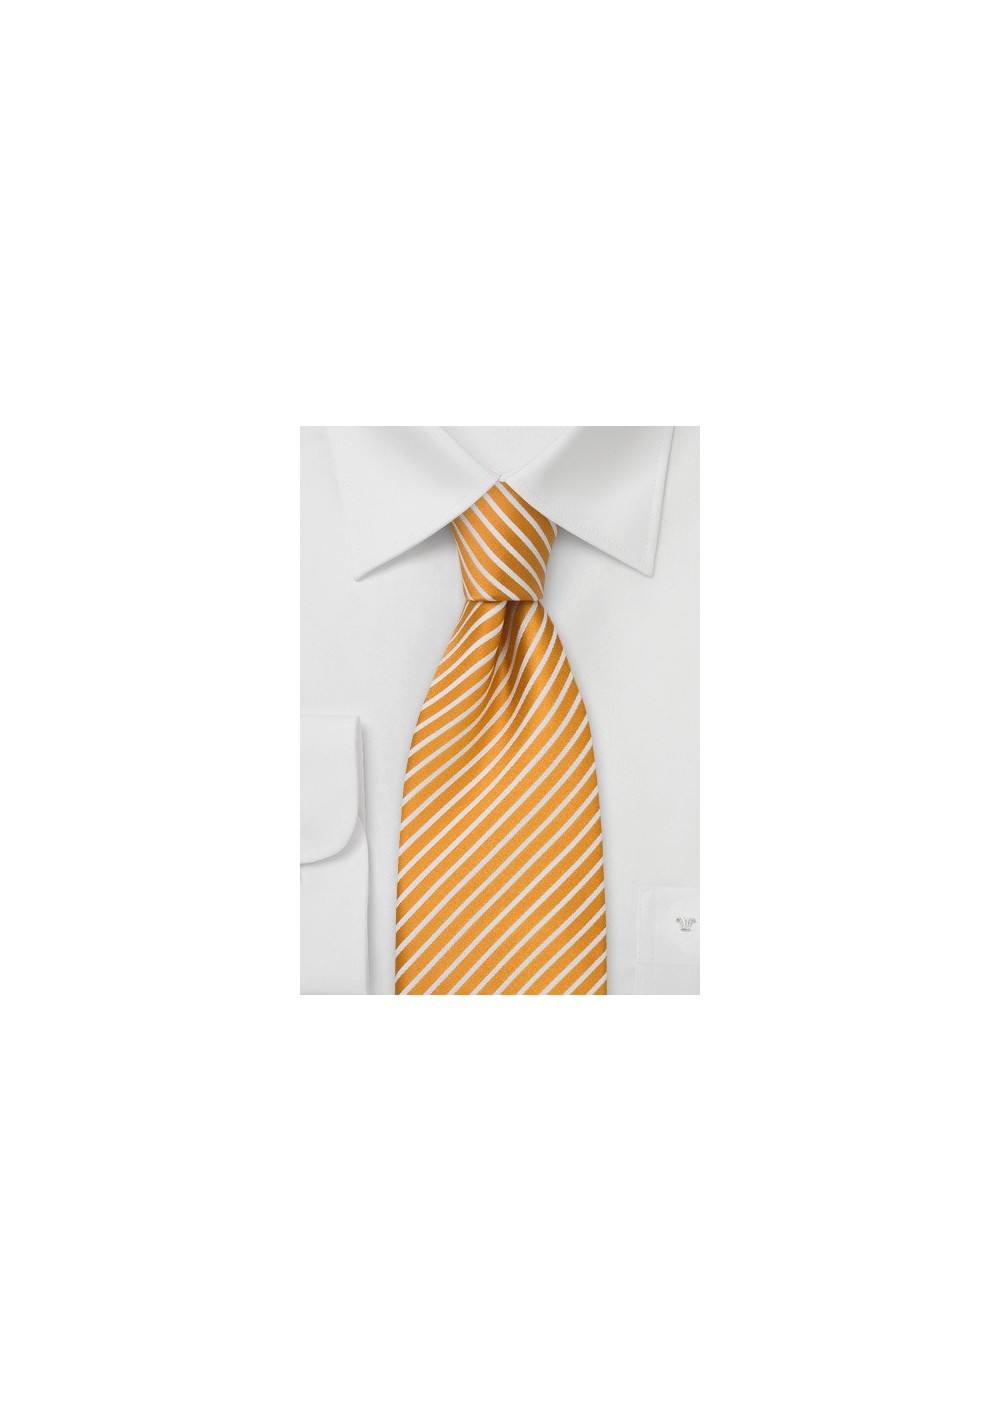 XL Sunflower Yellow Striped Tie